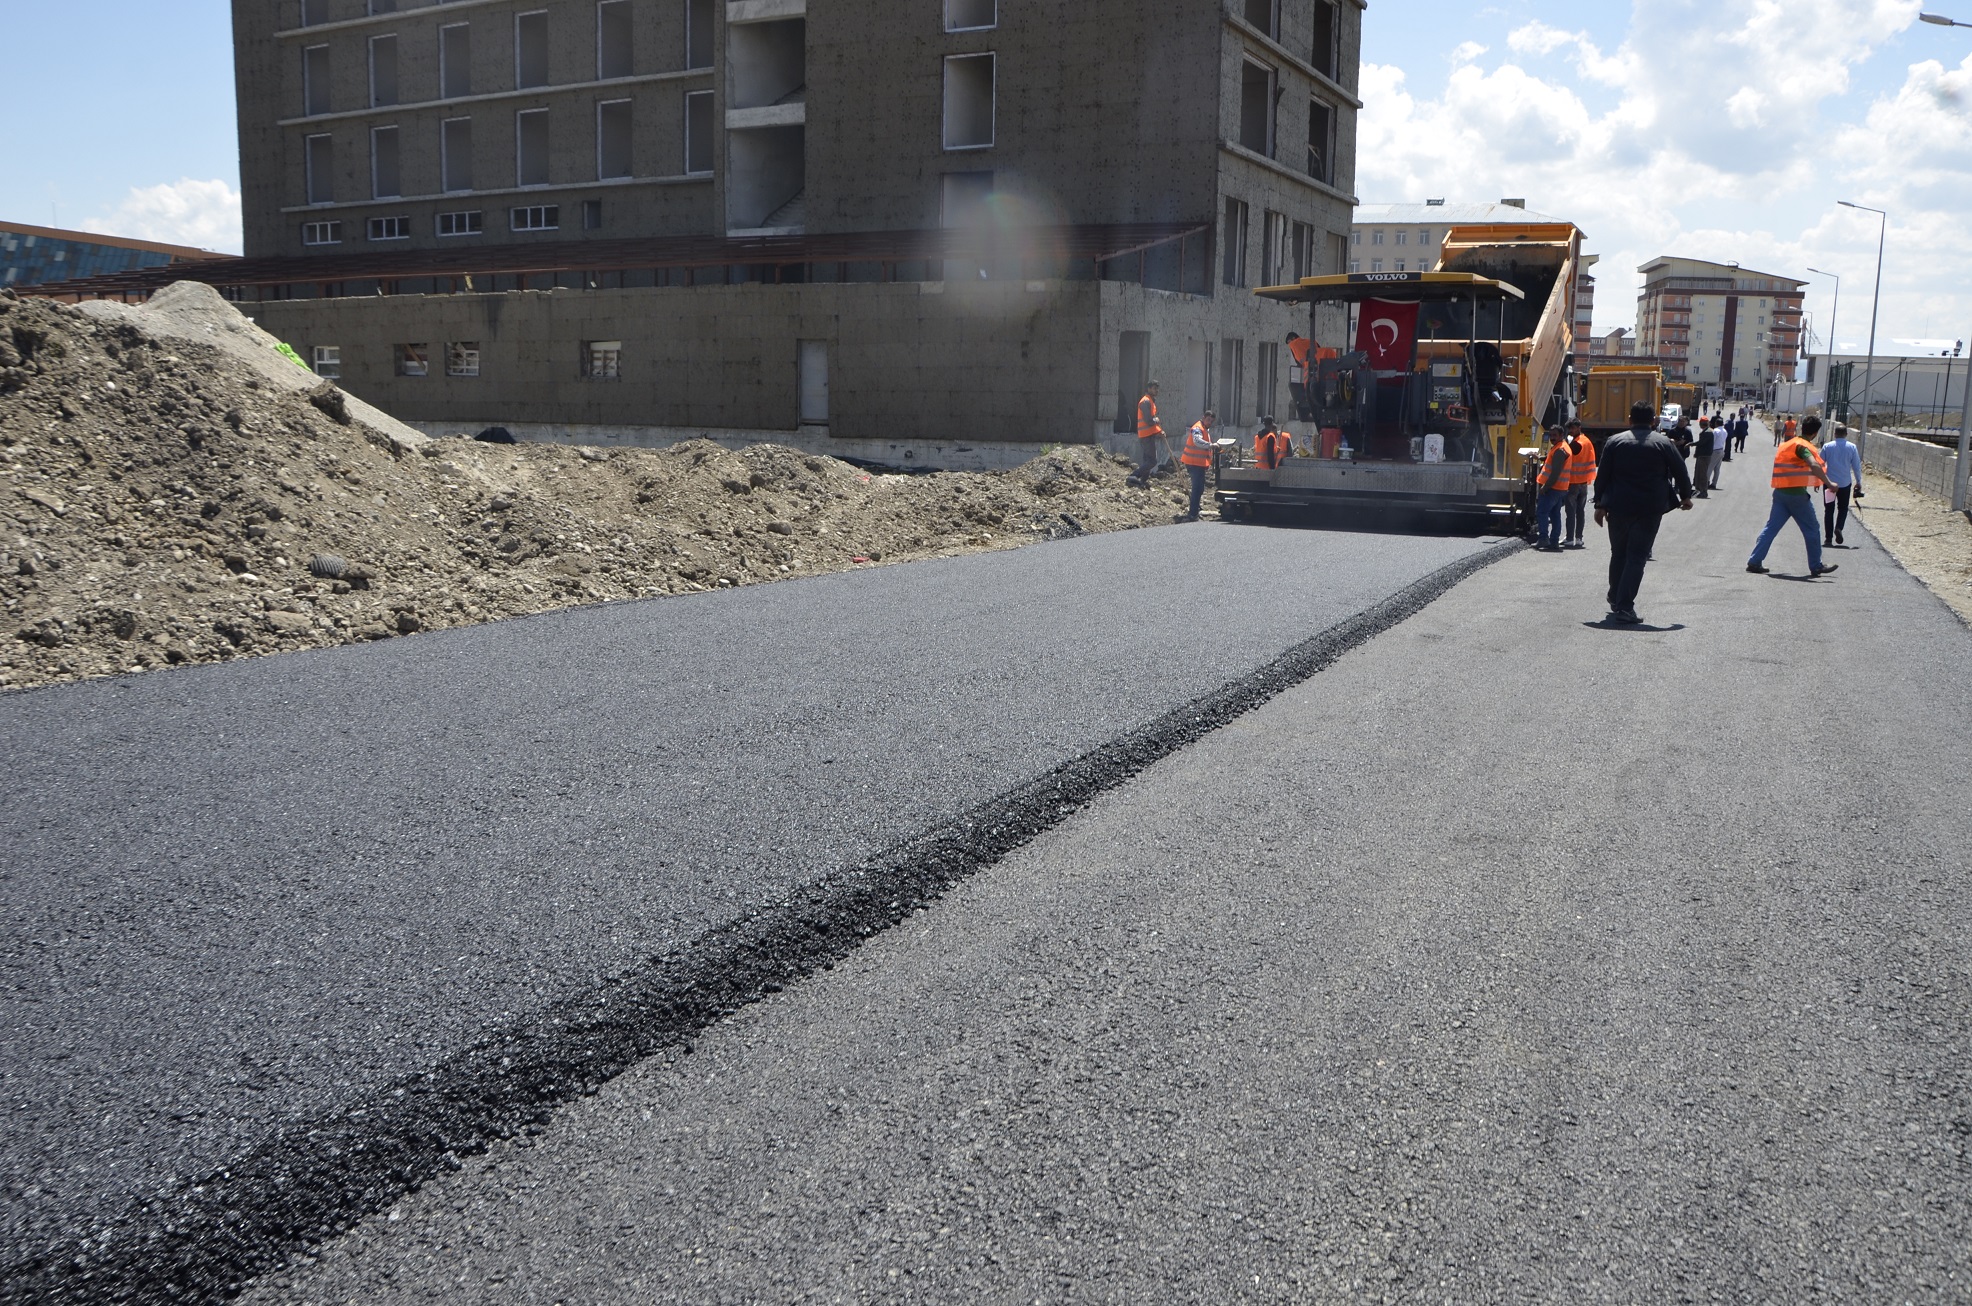 Ağrı Belediyesi tarafından asfalt çalışmaları başlatıldı. 